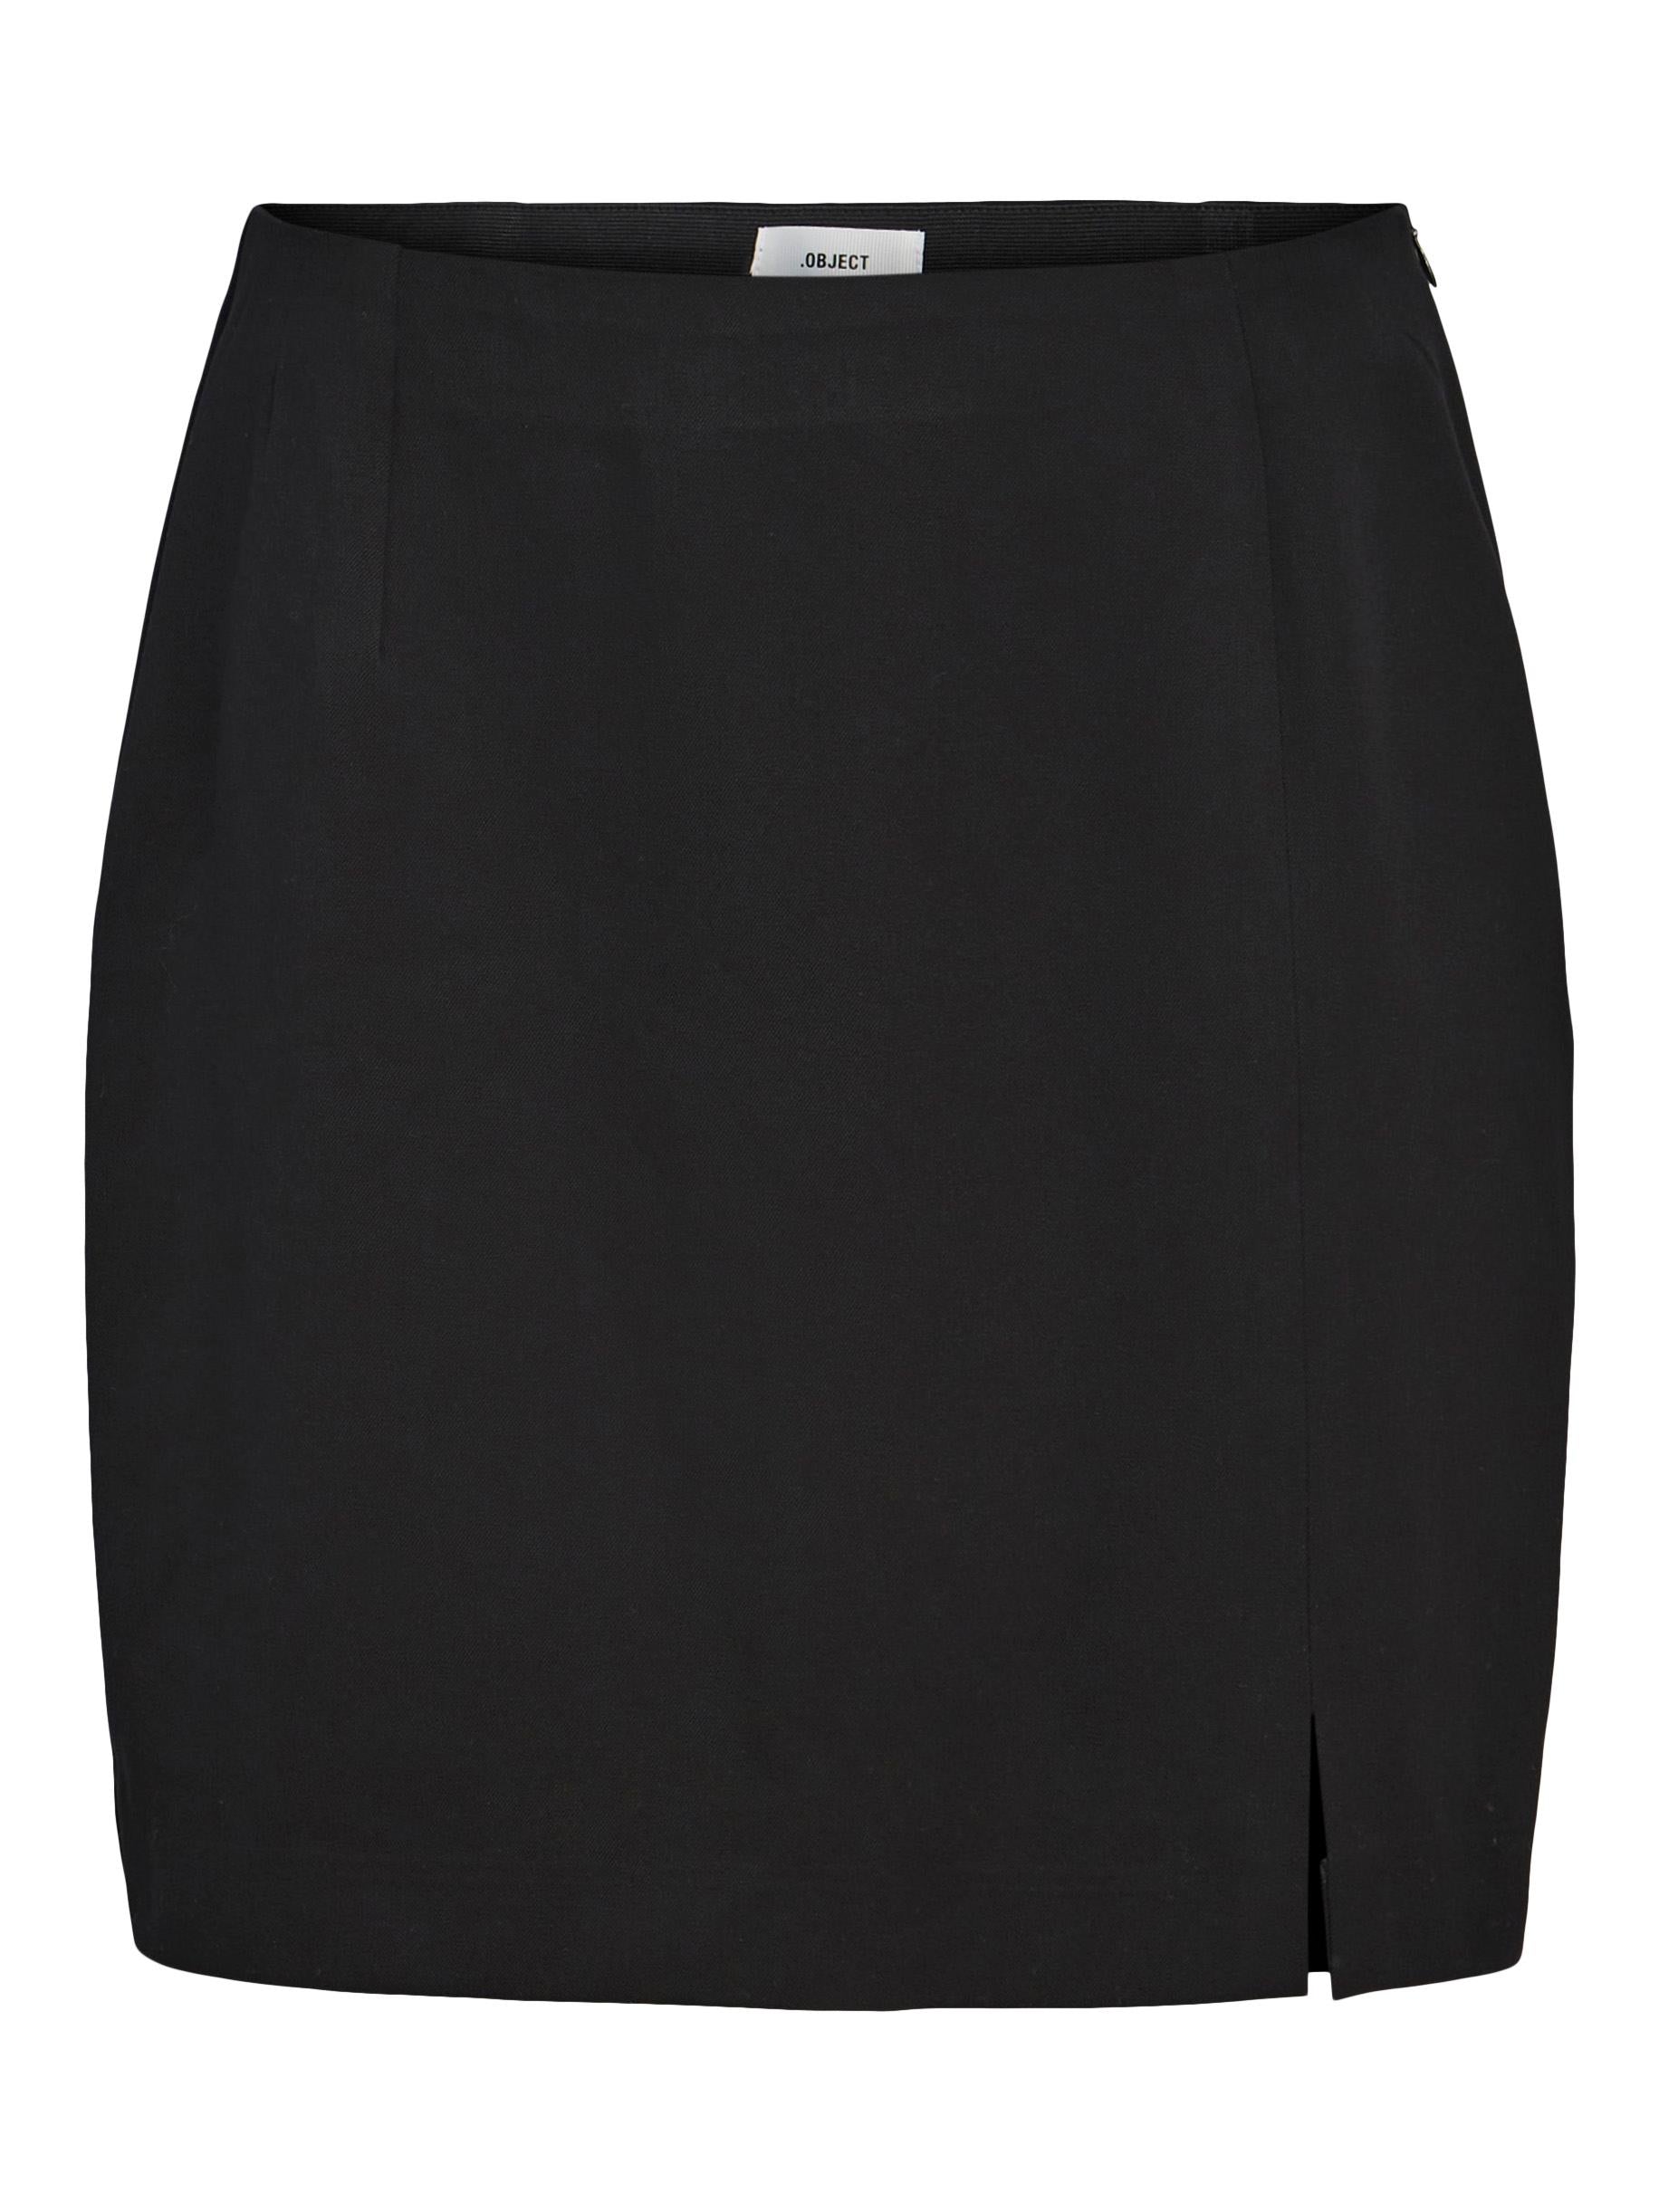 Object Lisa mini skirt